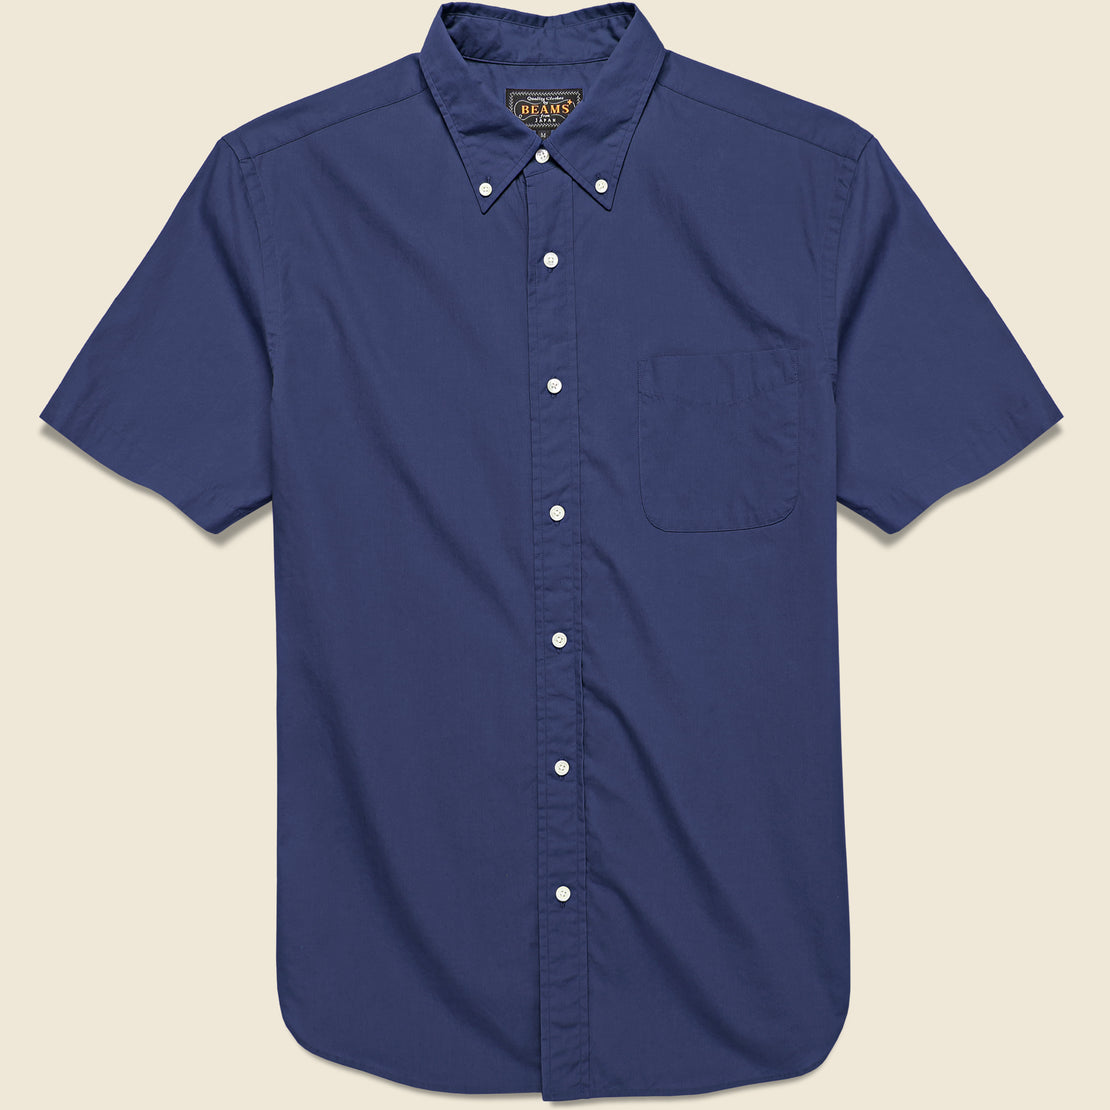 BEAMS+ Short Sleeve Broad Cloth Shirt - Navy